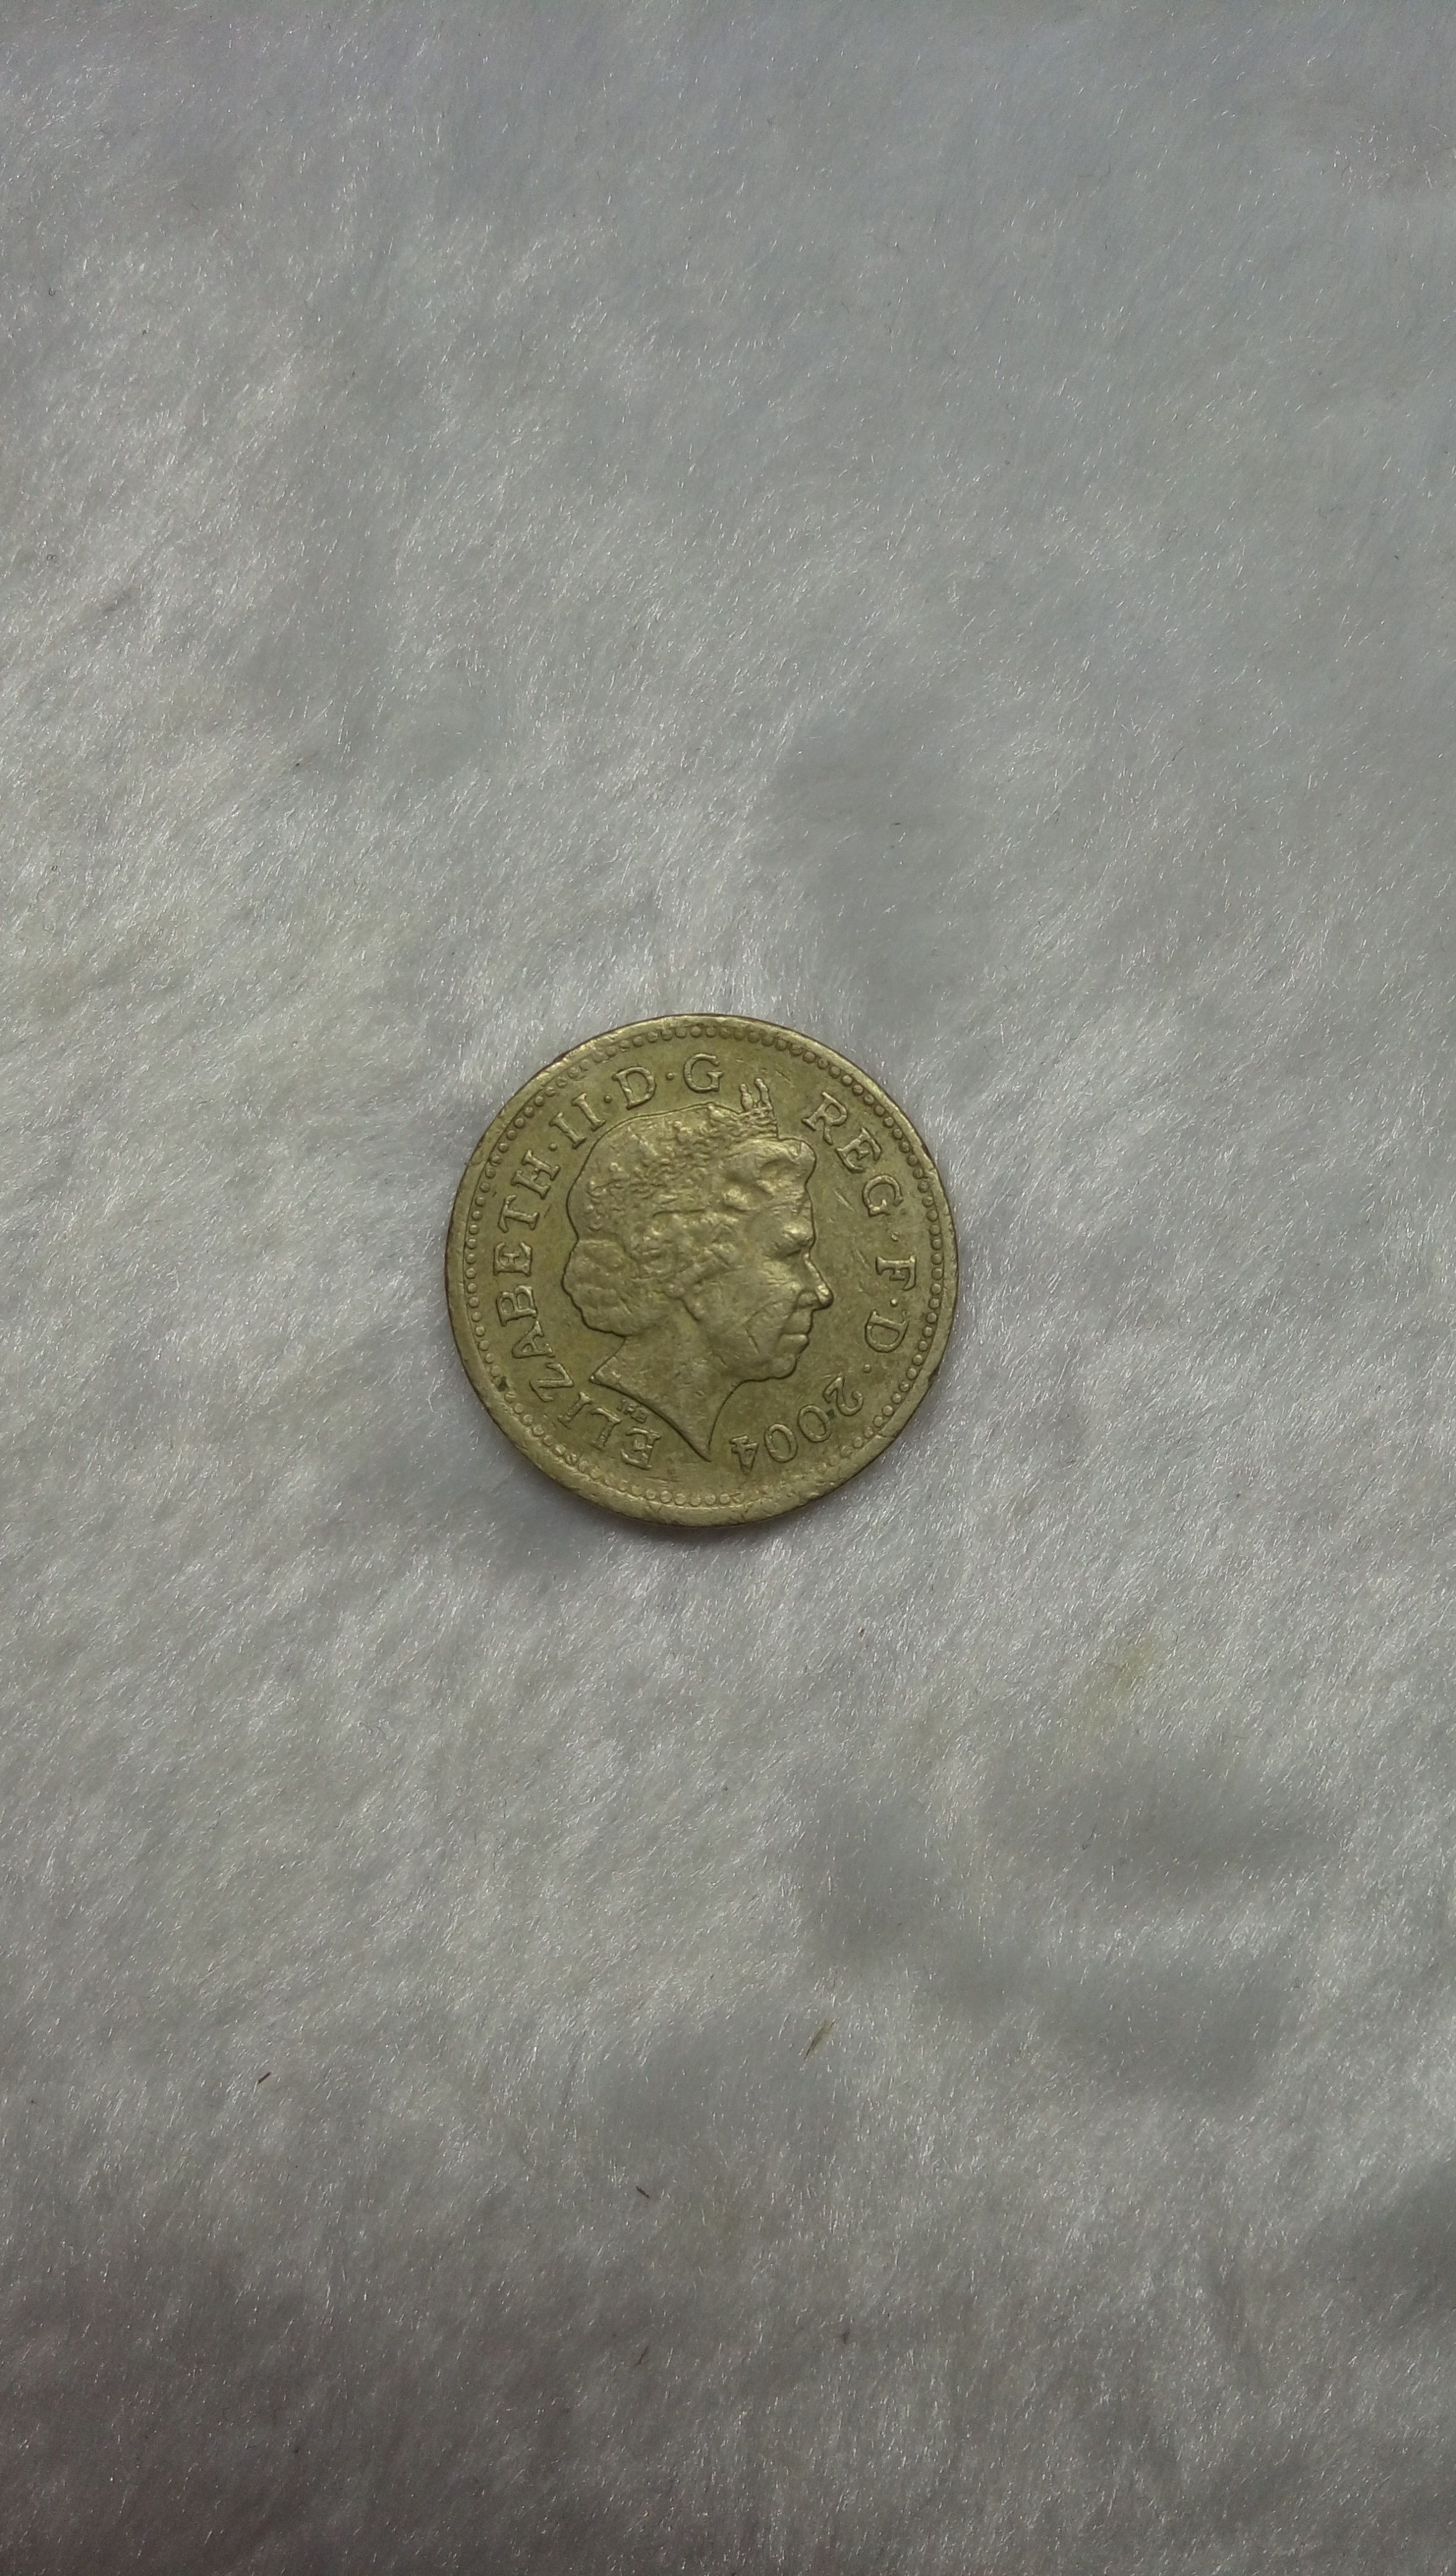 一元英镑图片硬币图片